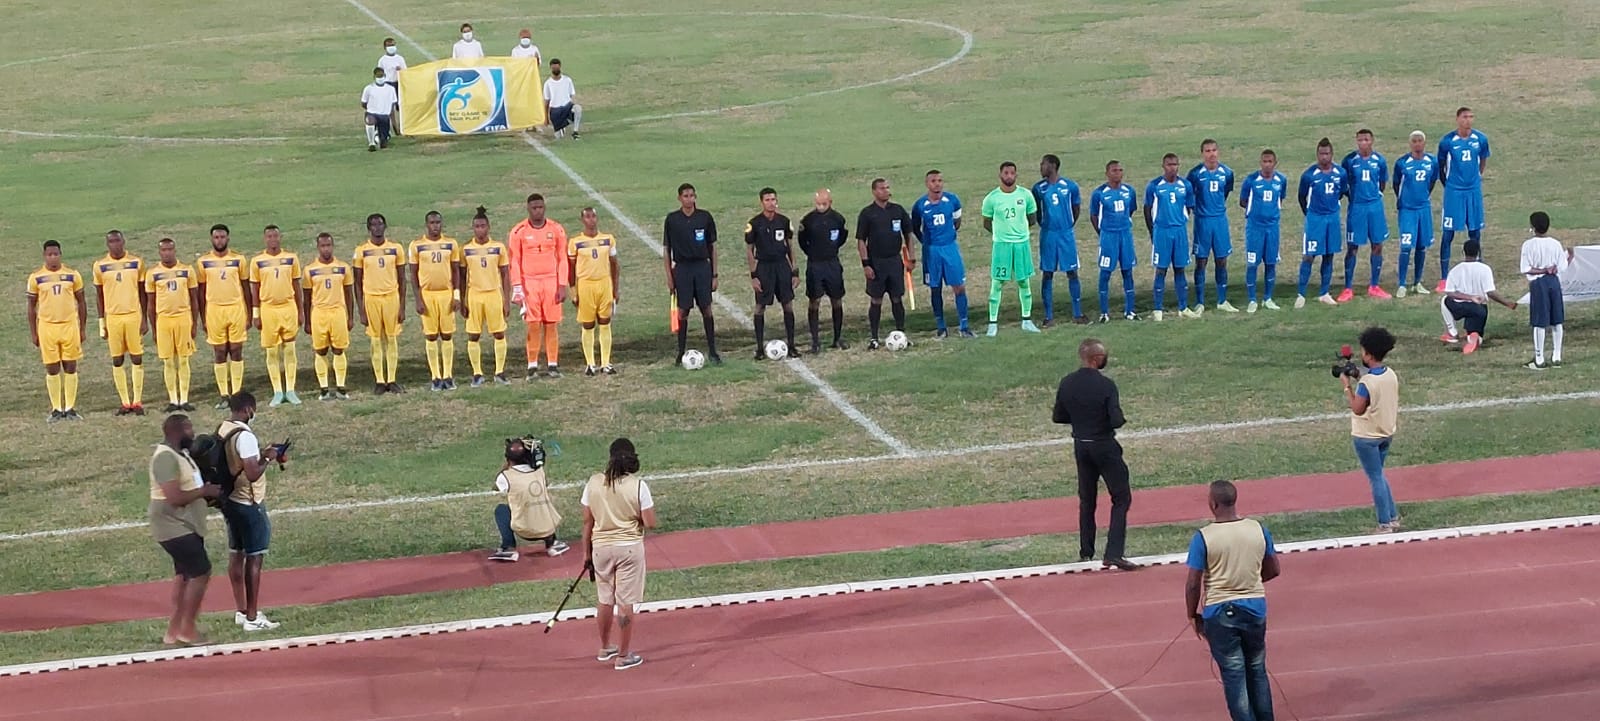     La Martinique bat la Barbade pour la première rencontre de l'ère Collat

